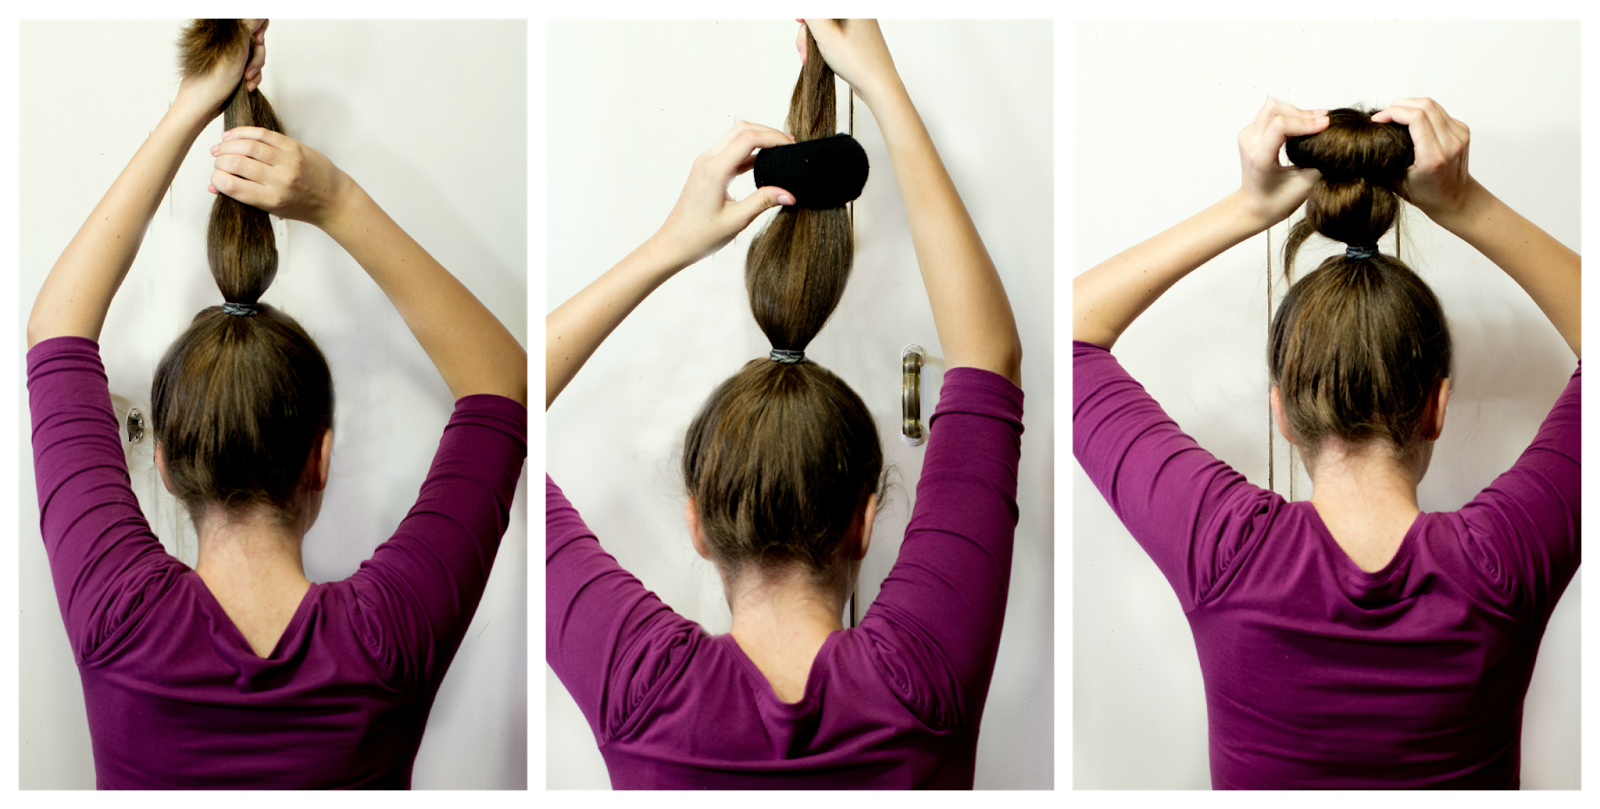 Как сделать объемную гульку из волос если не длинные волосы